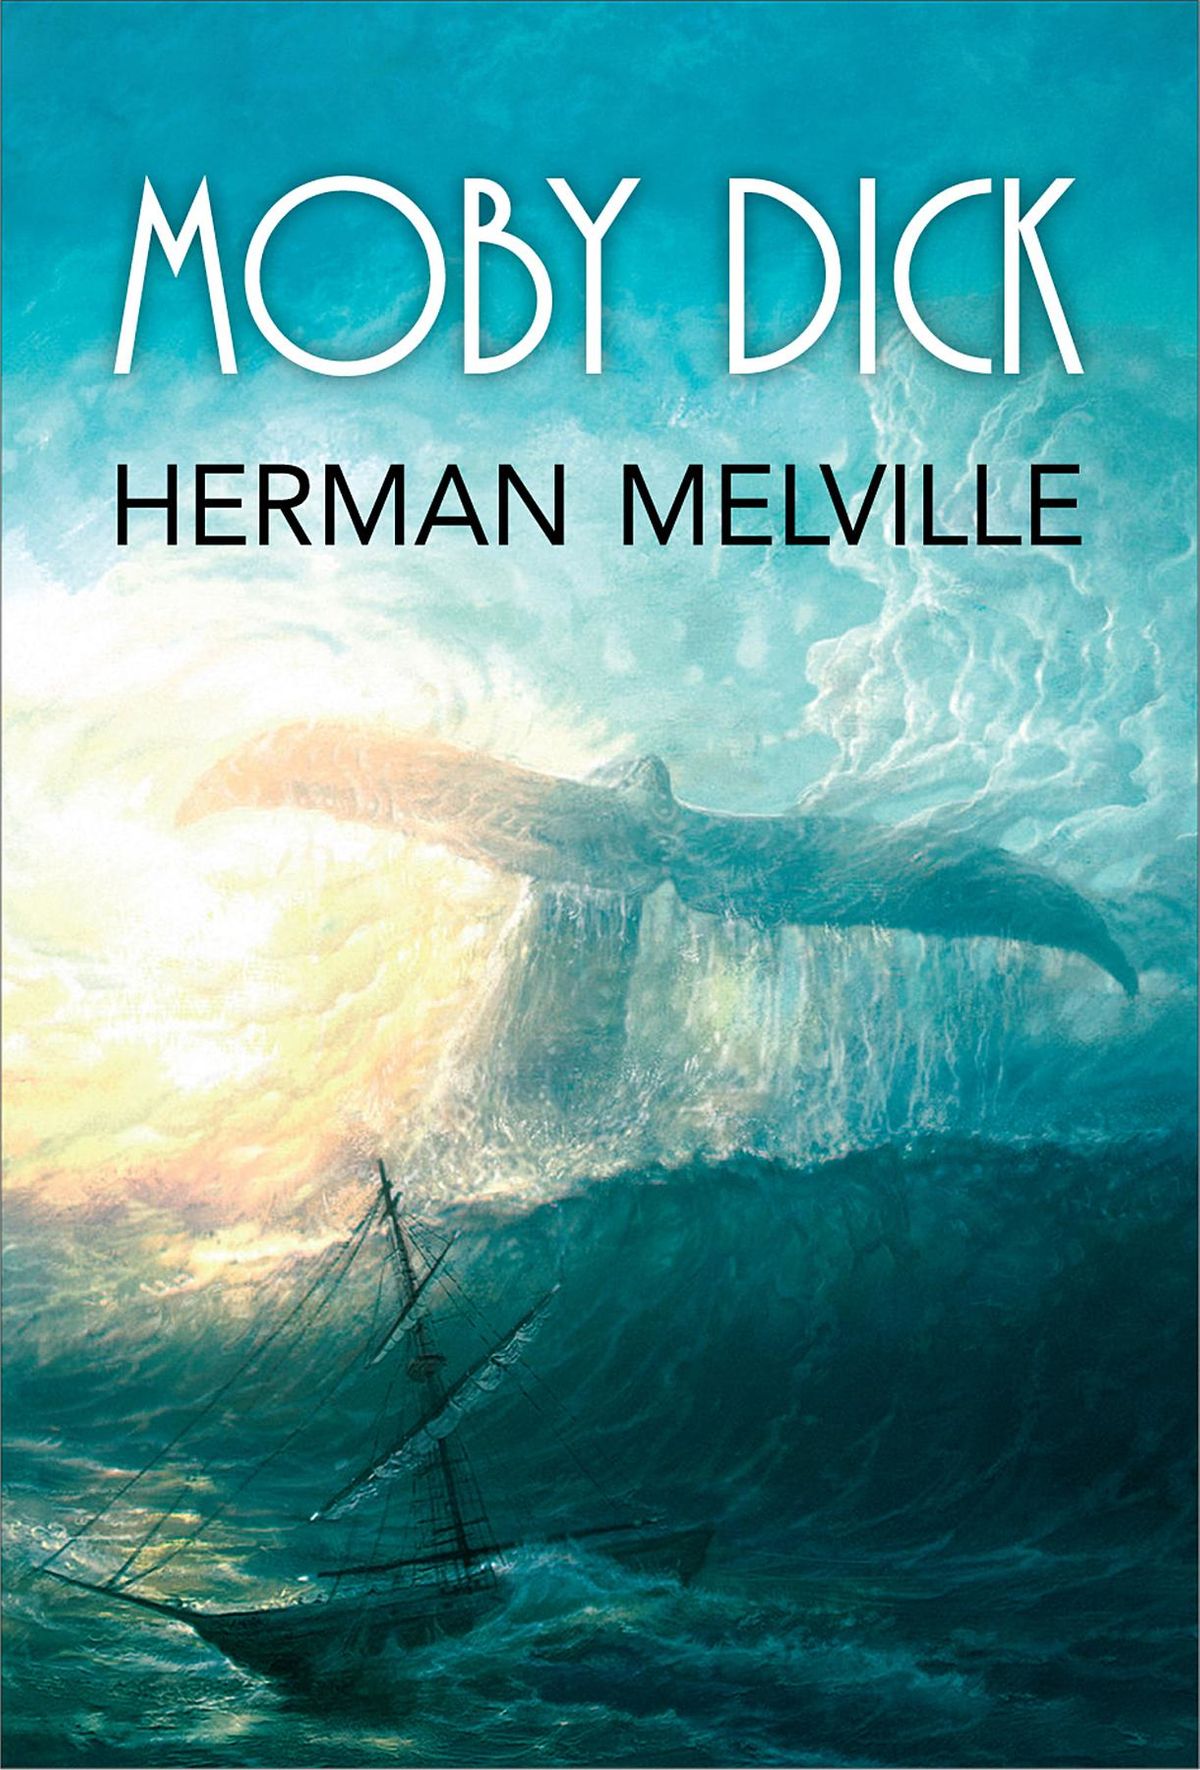 Tiểu thuyết Moby Dick của nhà văn Herman Melville. Ảnh: Kobo.